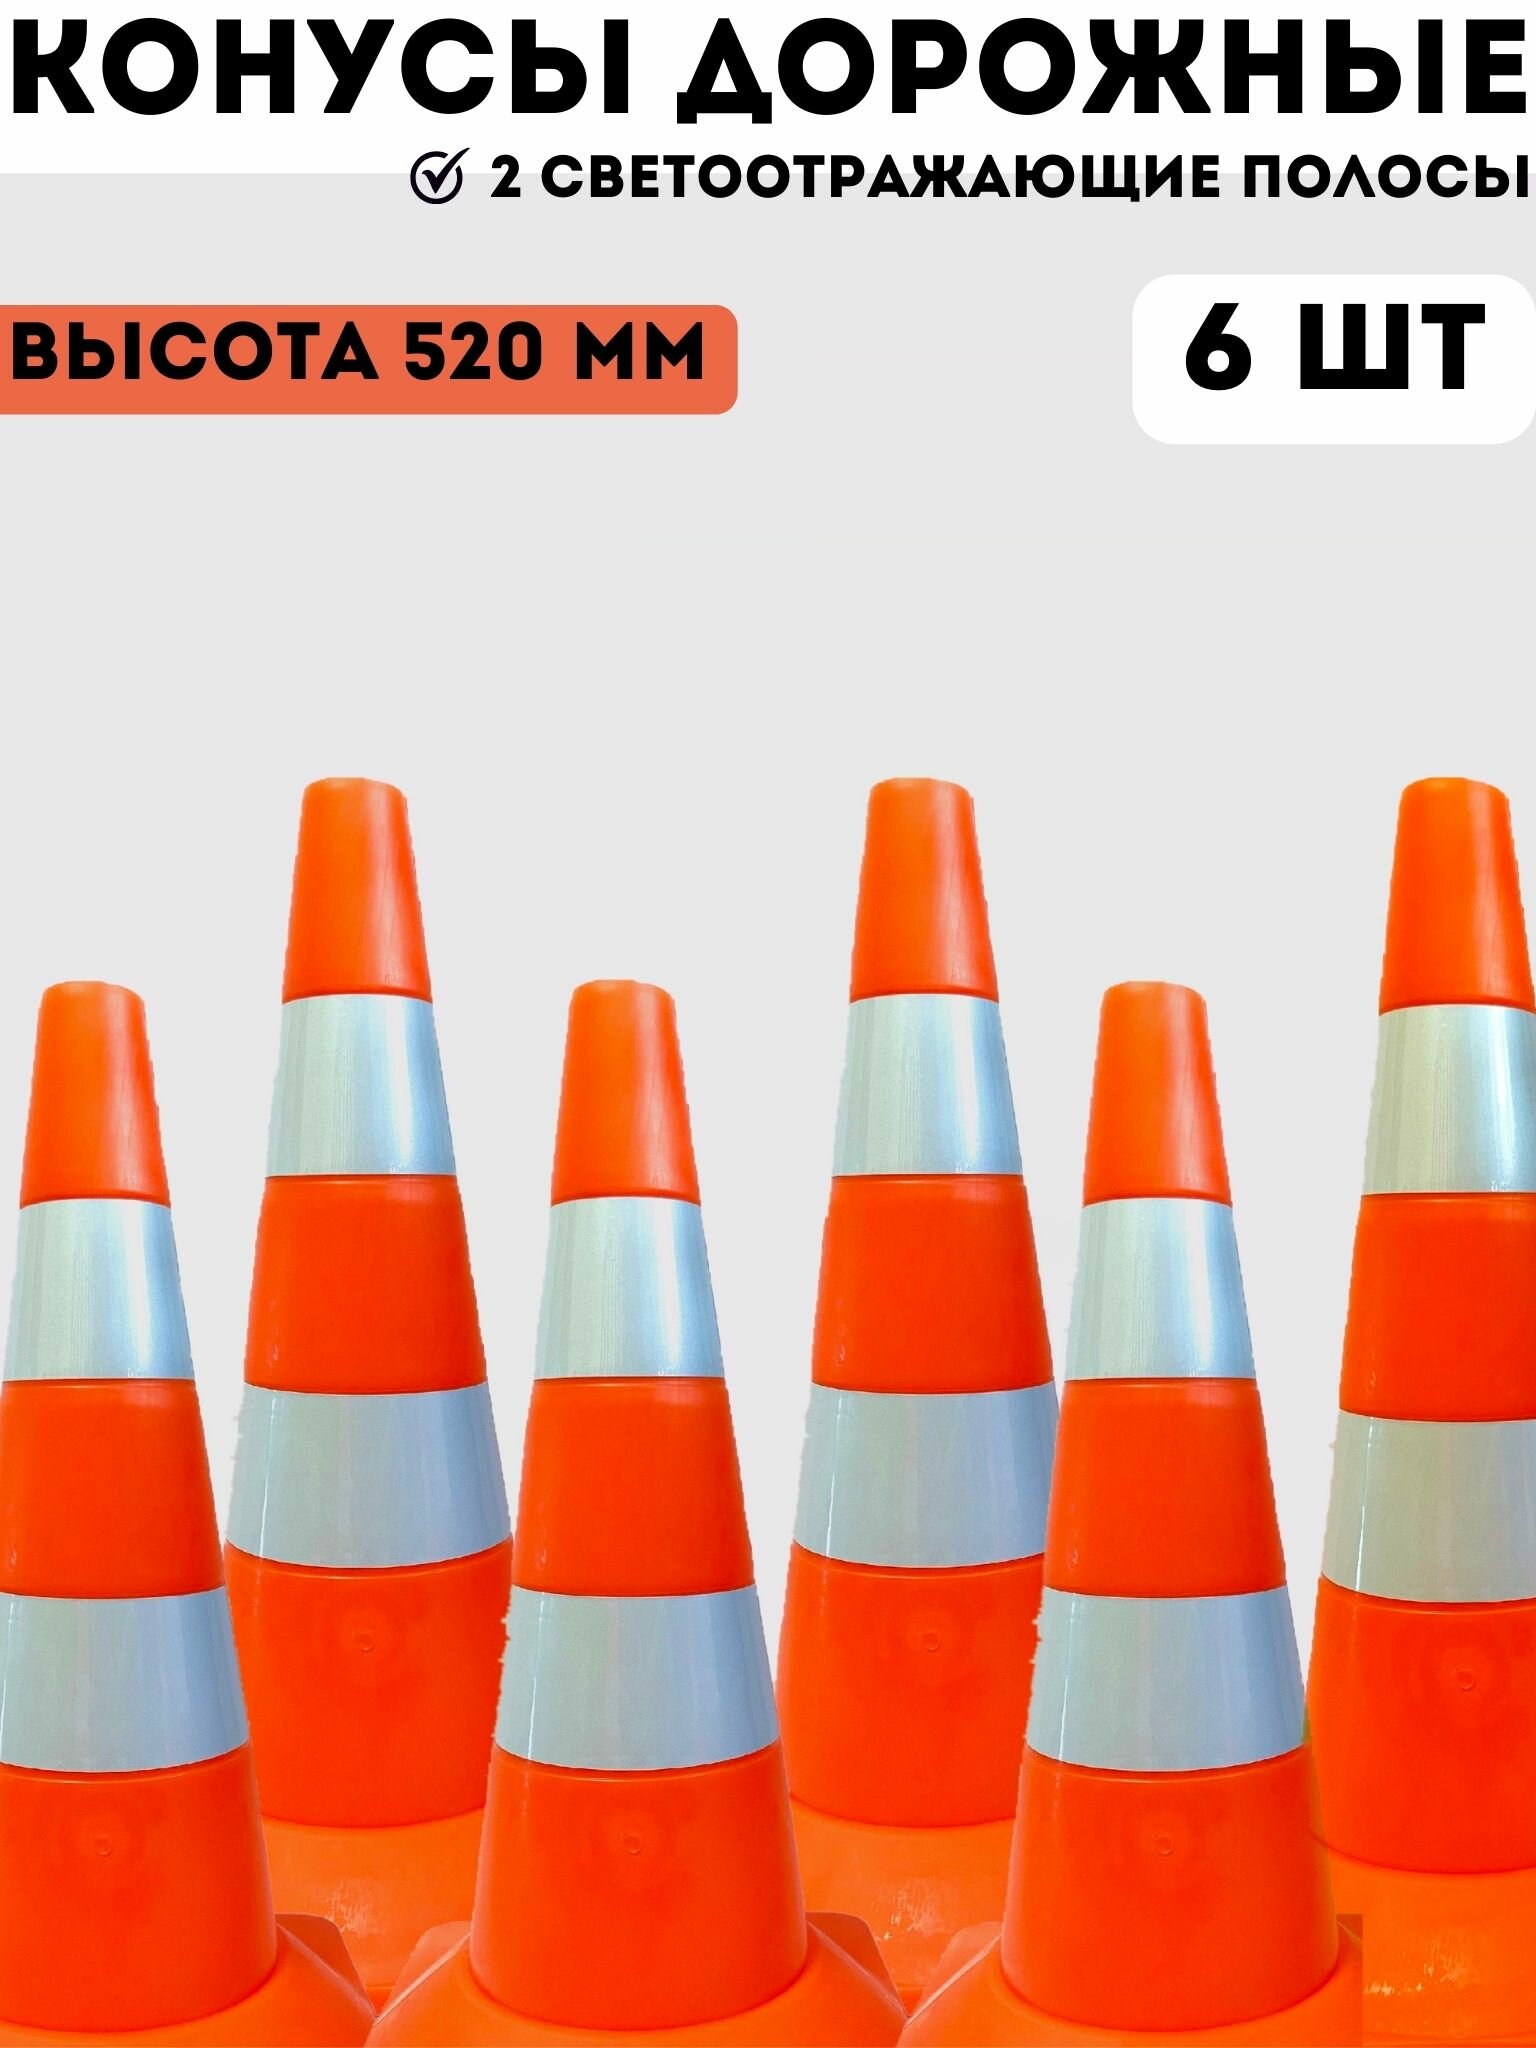 Конусы дорожные сигнальные пластиковые оранжевые с 2 светоотражающими полосами 520 мм, набор конусов 6 шт